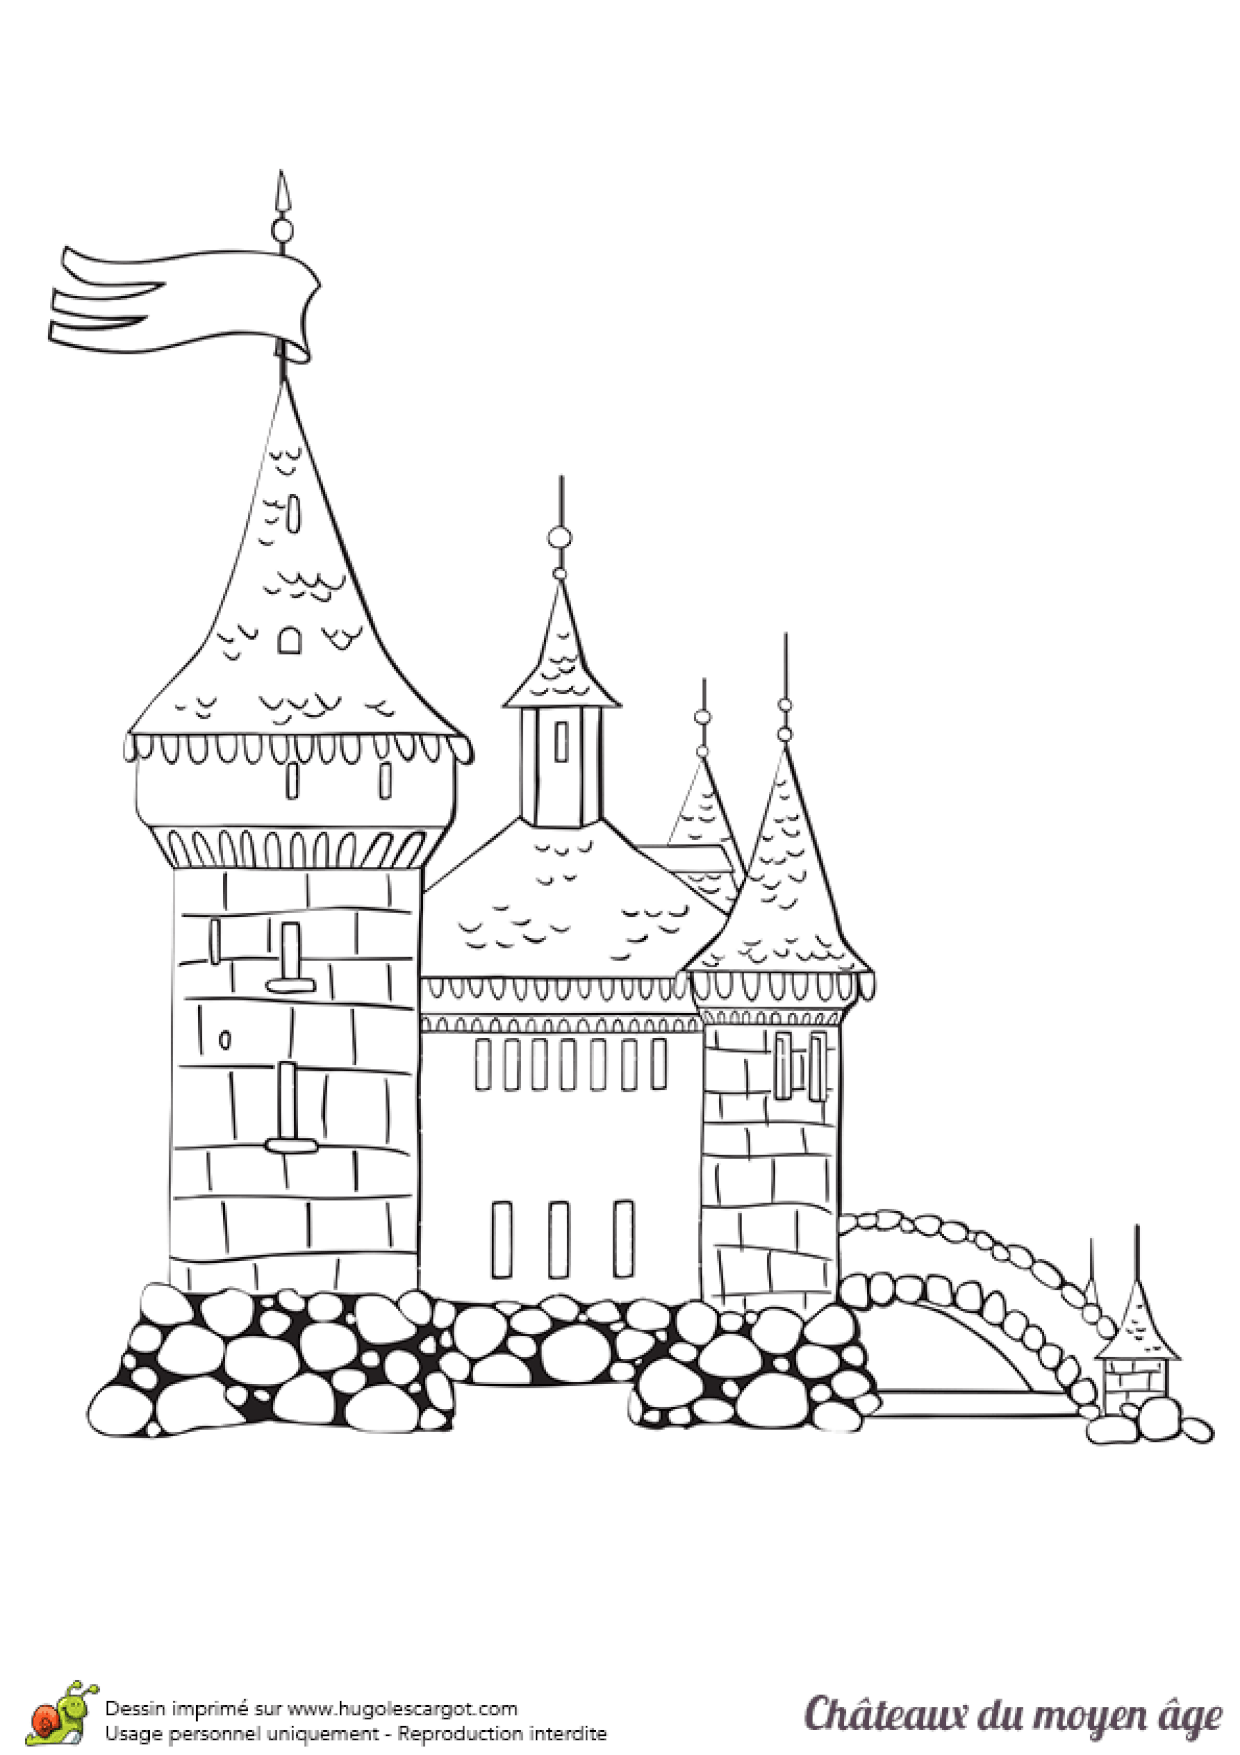 Рыцарский замок. Раскраска